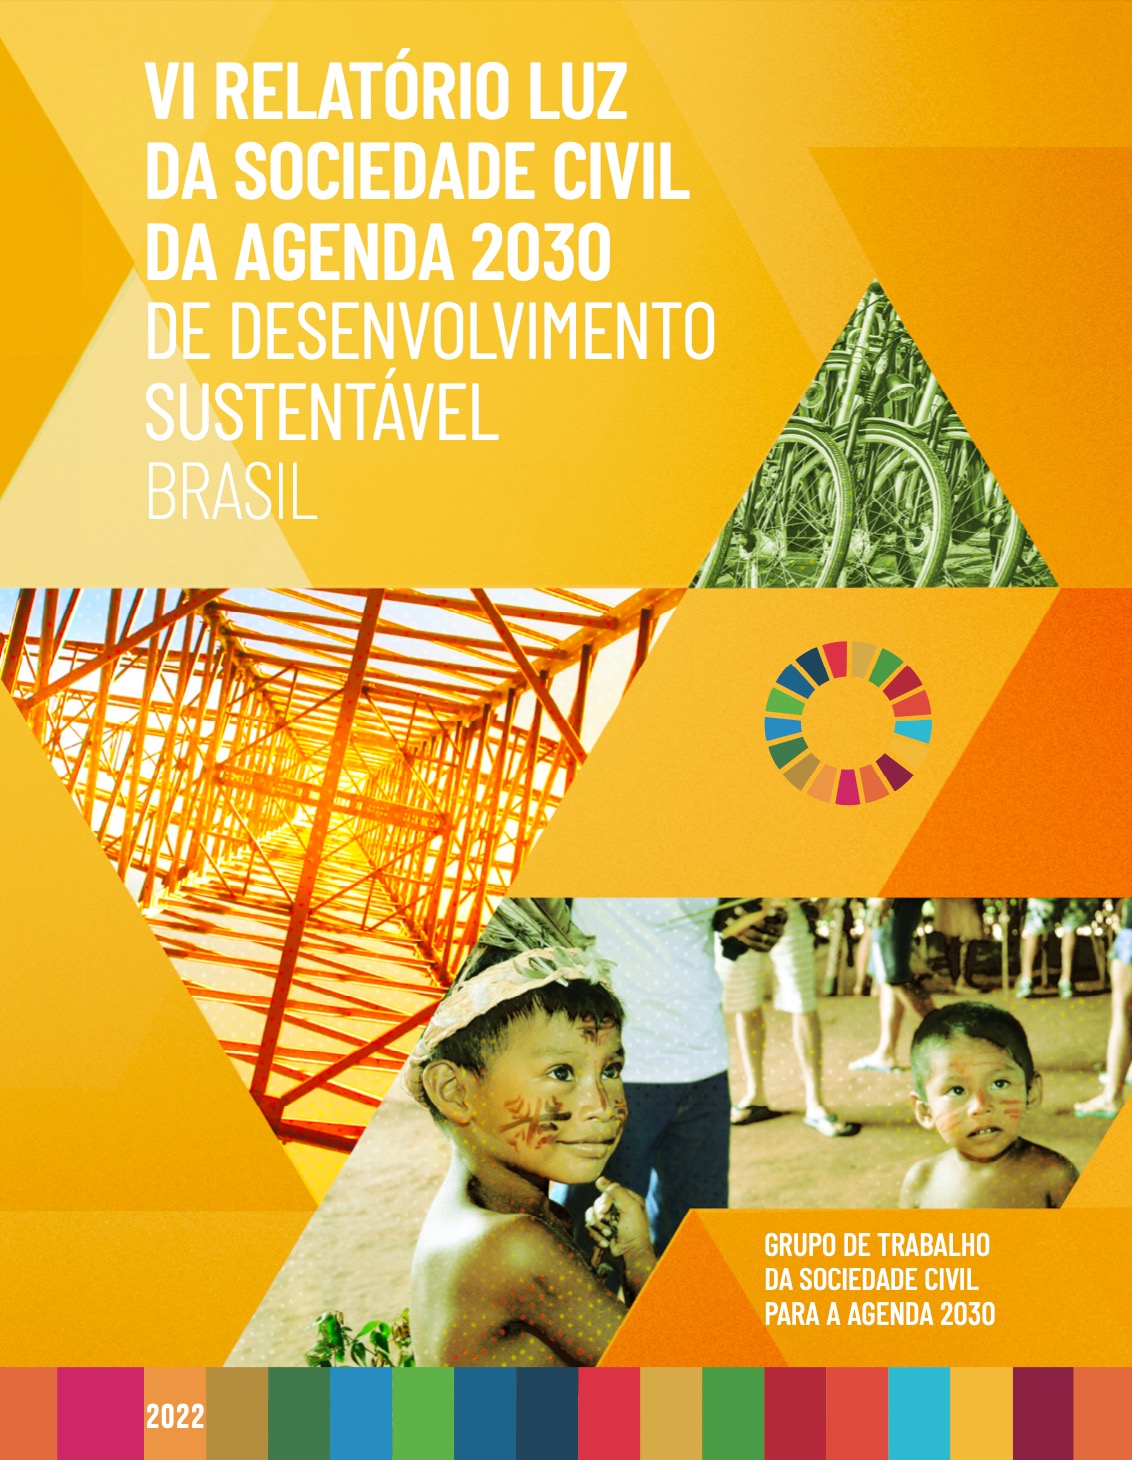  VI Relatório Luz sobre a Agenda 2030 no Brasil aponta os piores indicadores ambientais e socioeconômicos desde o início da série histórica, em 2017